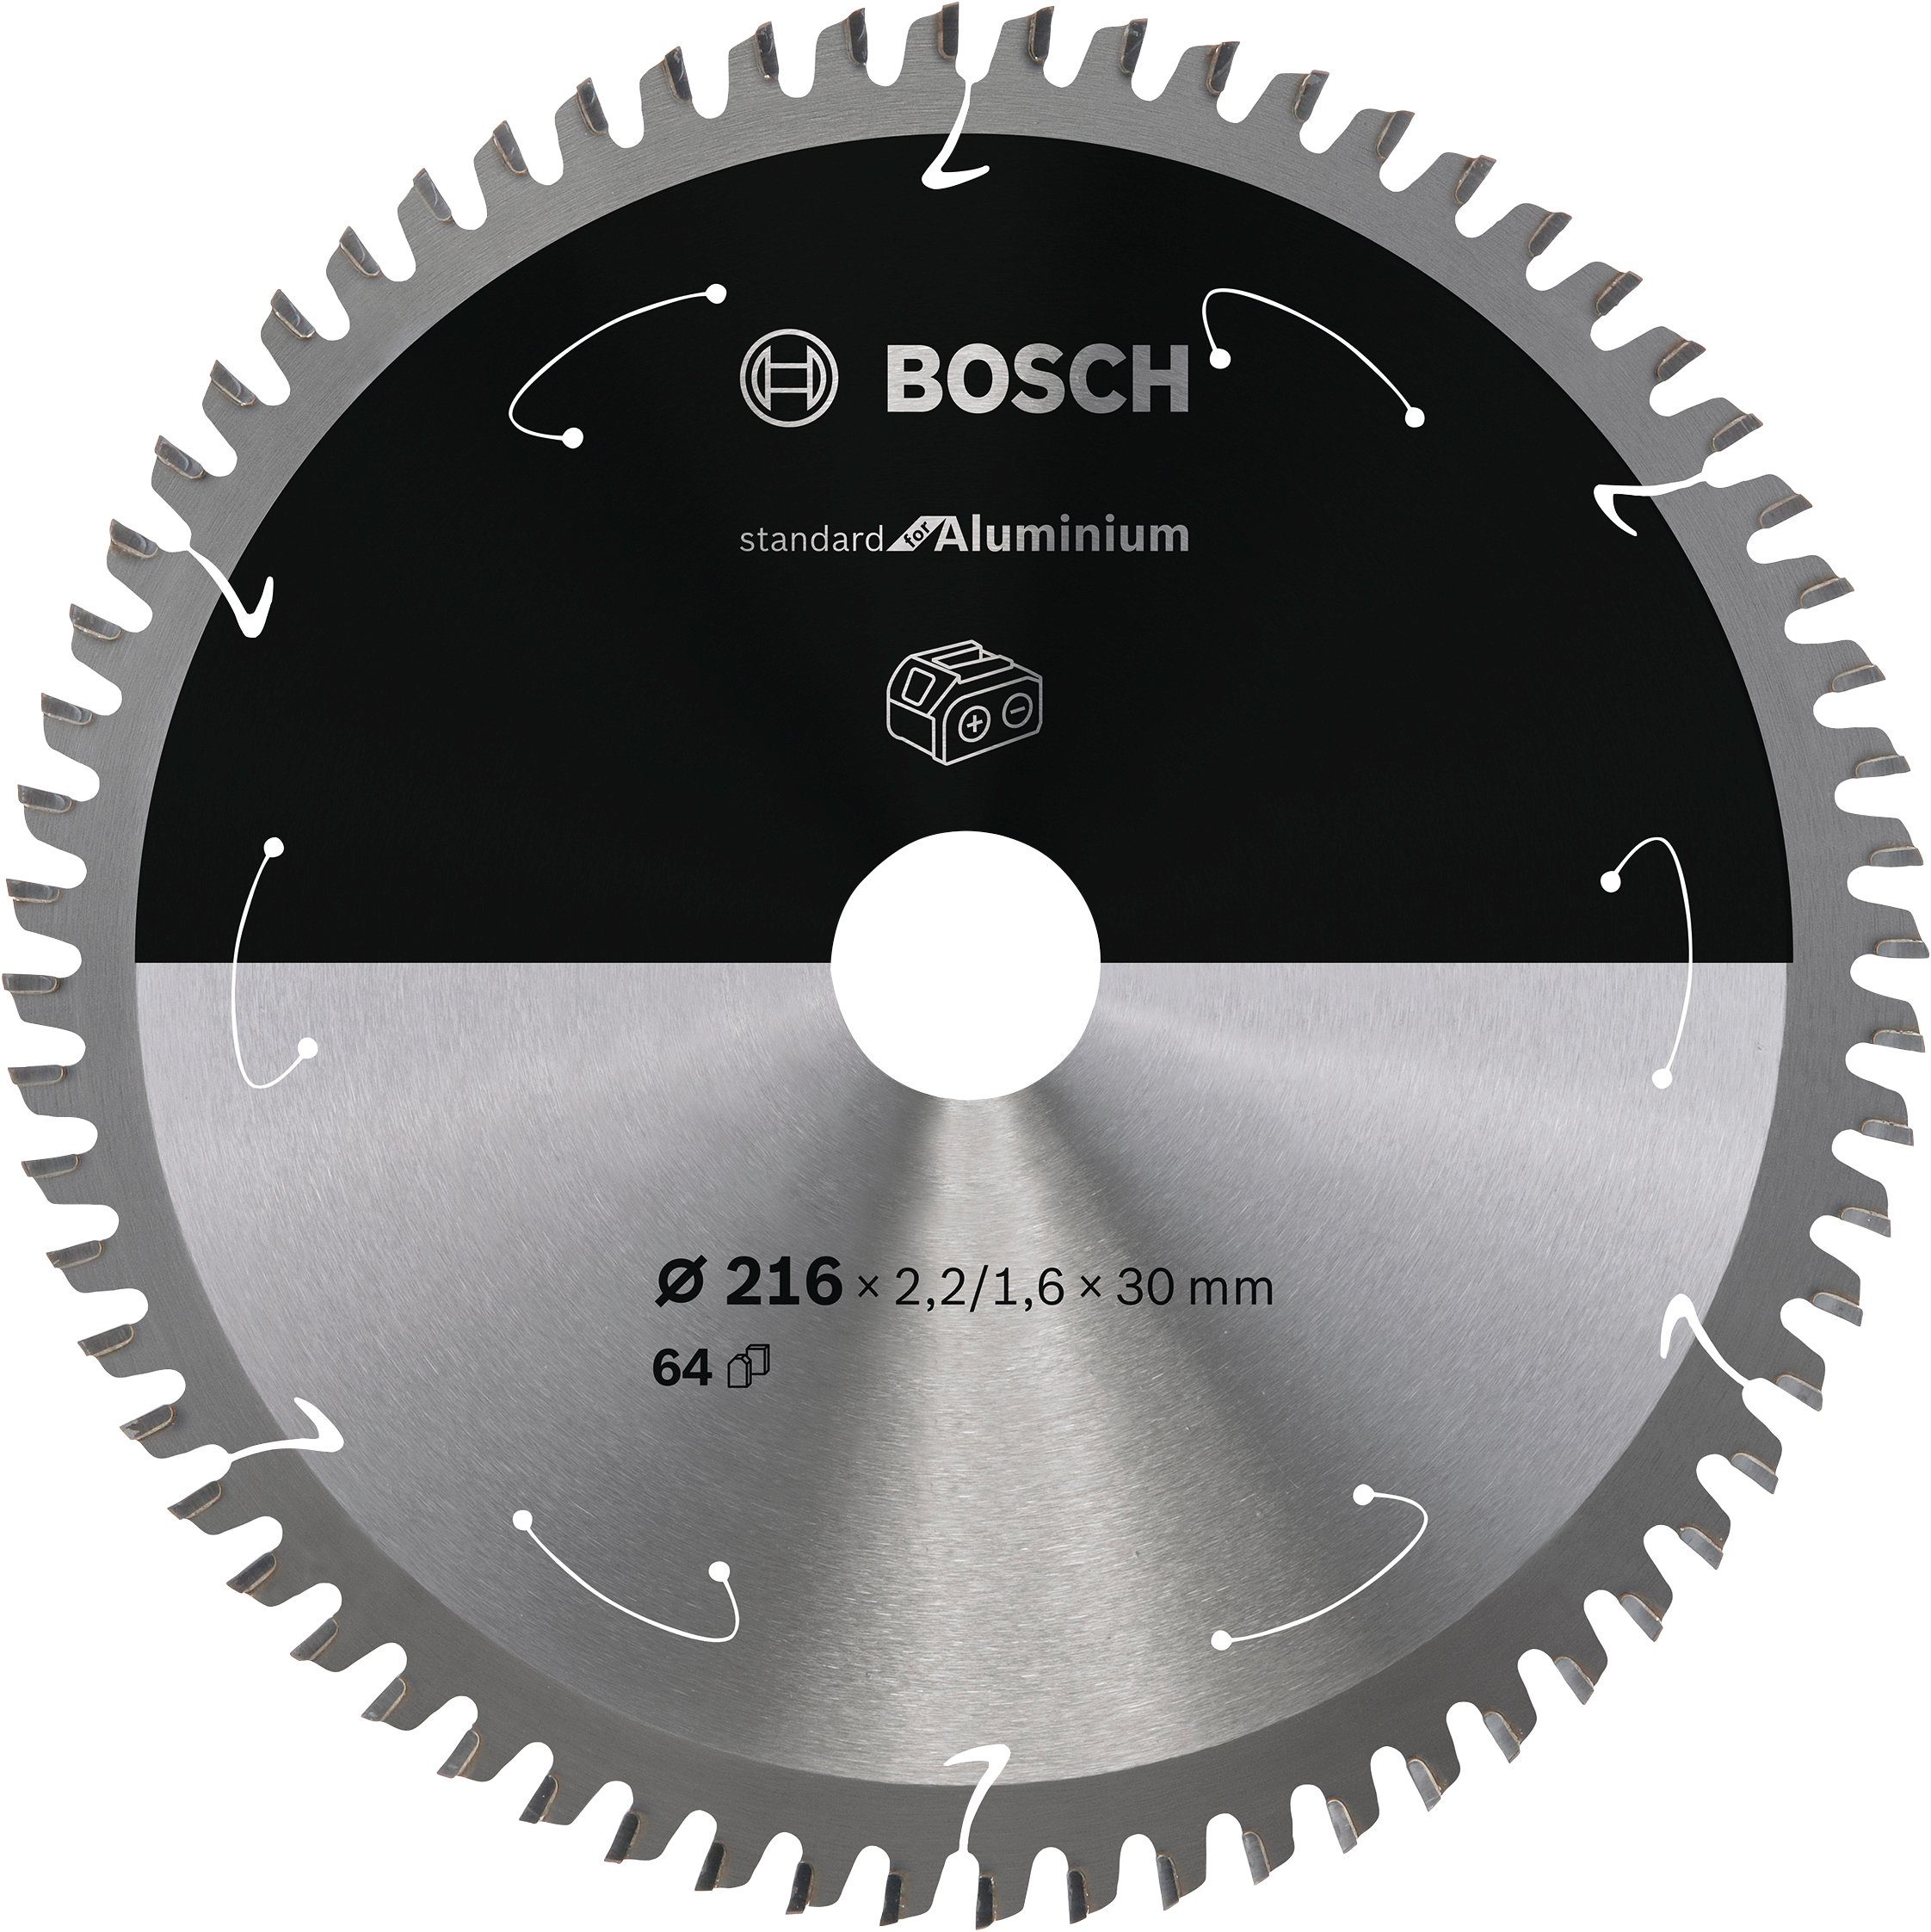 2608837776, Professional 216 x 2,2/1,6 x 30, Aluminium, 64 Zähne Kreissägeblatt Standard for Akkusägen, für Bosch